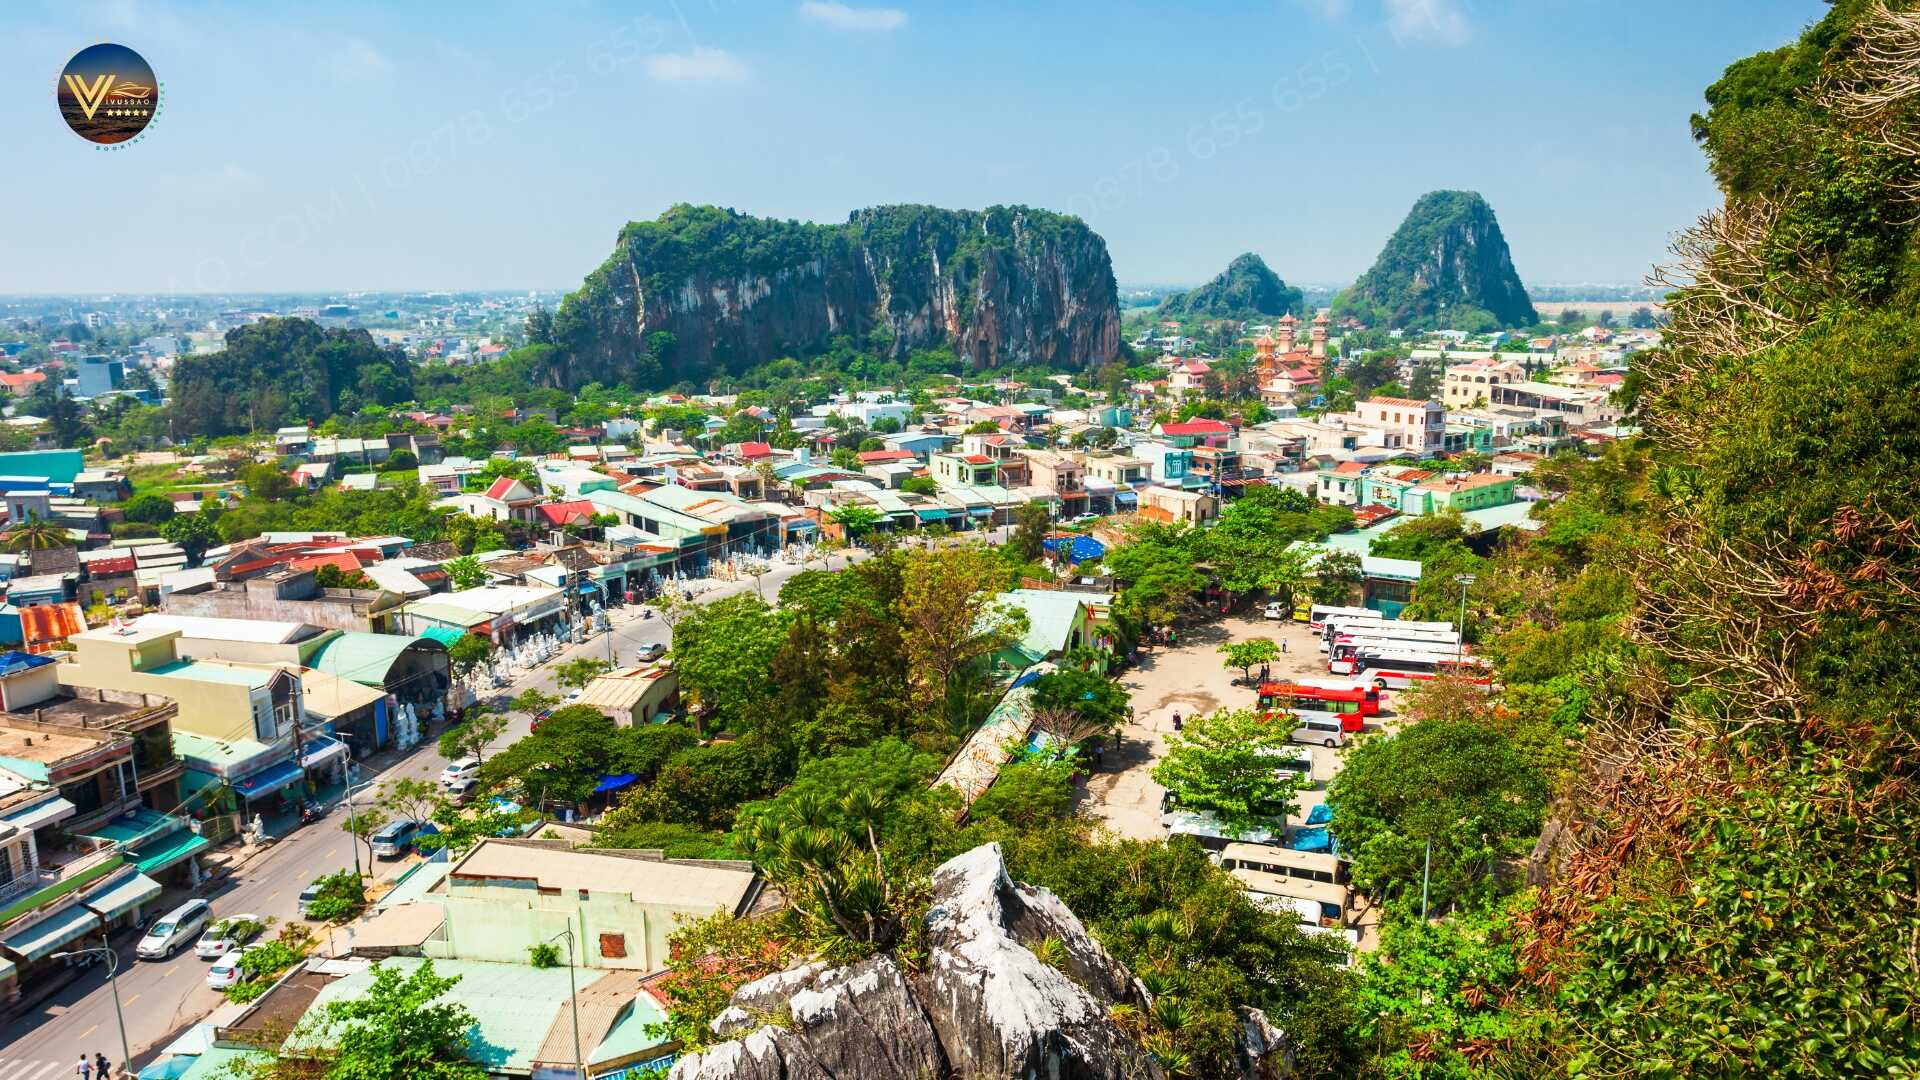 Du lịch Ngũ Hành Sơn - Đà Nẵng - Việt Nam | Tour du lịch ngũ hành sơn trong ngày